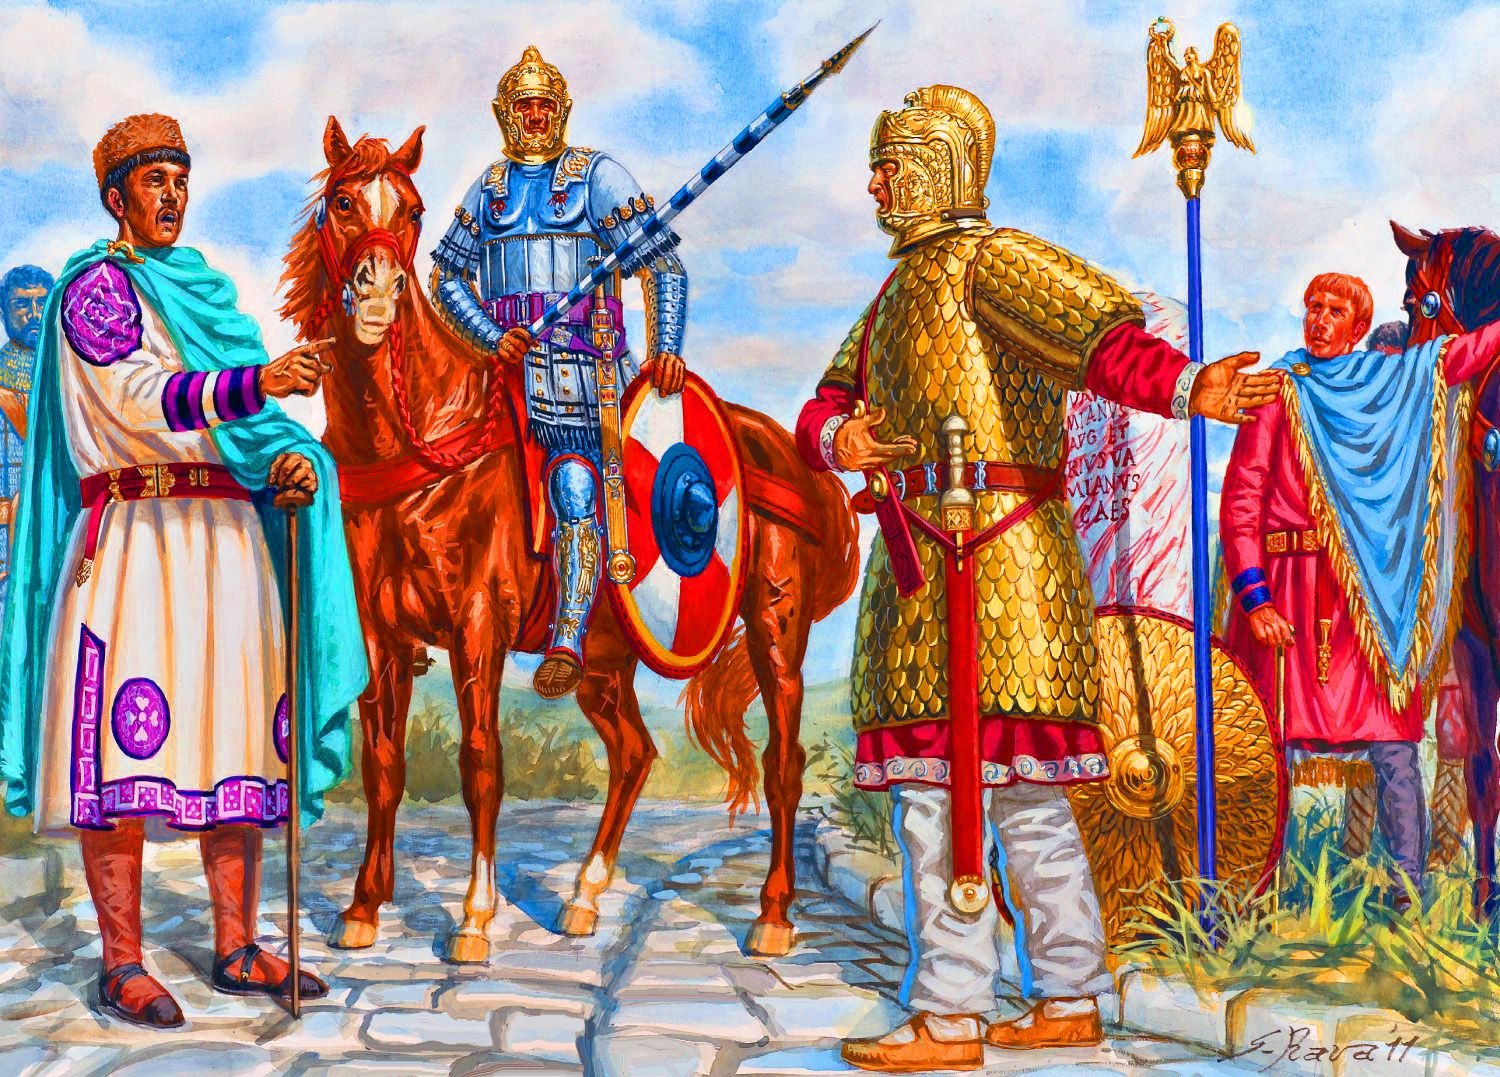 Century roman. Византийская армия 5 век. Римская армия 4-5 век. Римская армия 5 век. Солдаты Византийской империи 1453.